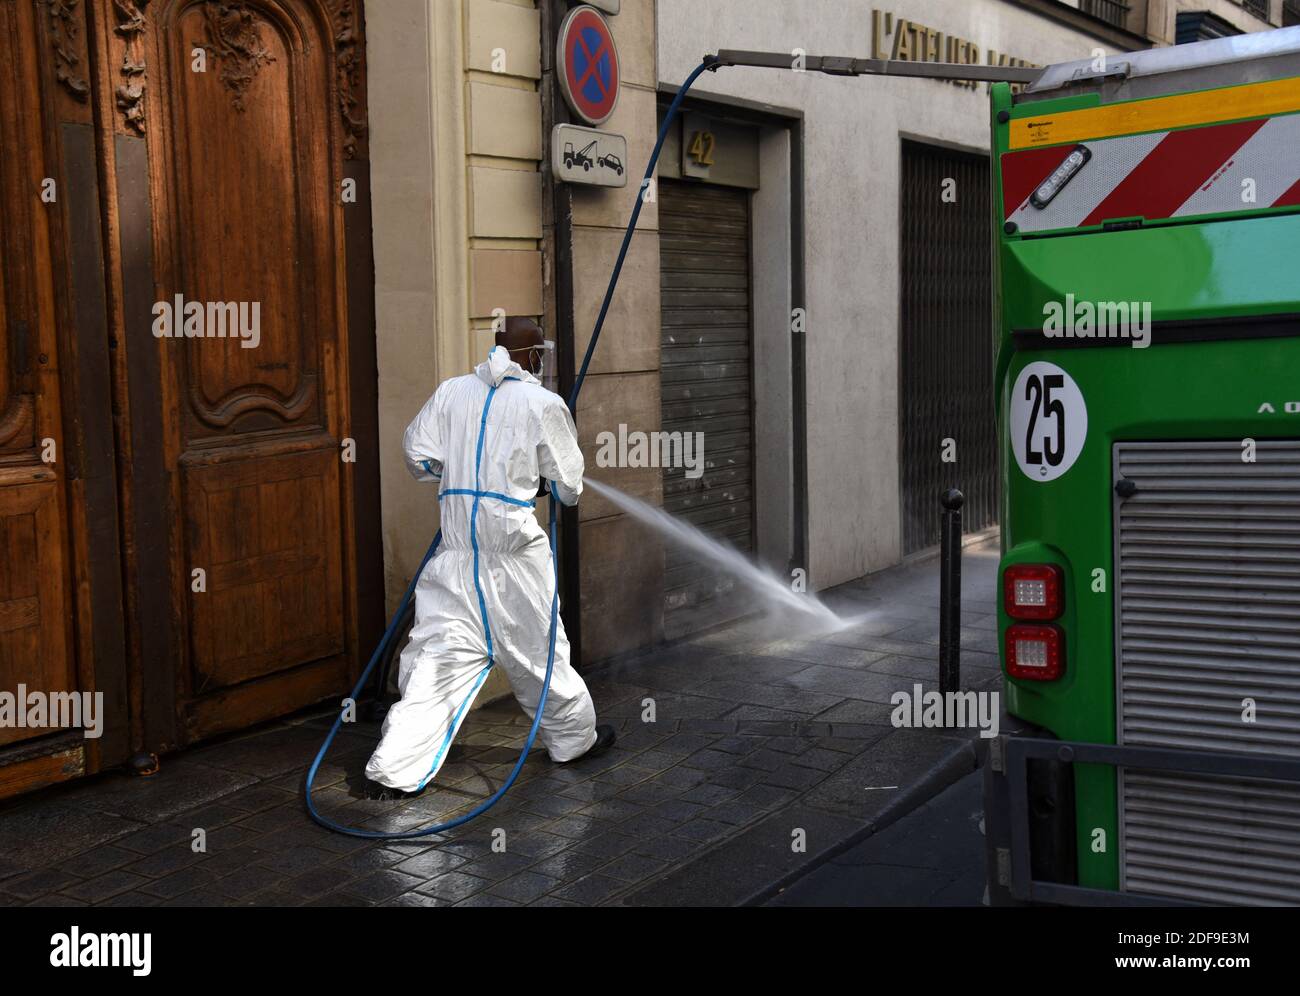 Un servizio urbano pulitore di strada, indossando maschera e guanti, pulire il marciapiede di una strada con una lancia d'acqua a Parigi, Francia, il 24 aprile 2020, come il paese è sotto blocco per fermare la diffusione della pandemia Covid-19 causata dal novo coronavirus. La Mairie di Parigi ha assicurato ai residenti che "non c'è rischio di acqua di rubinetto", dopo che una settimana fa sono state trovate tracce di coronavirus SARS-COV-2 - che causa Covid-19 - nella fonte idrica non potabile della capitale. Le tracce sono state trovate in quattro campioni del 27 prelevati dall'acqua dall'autorità comunale Eau de Paris, guidata dalla Mairie. Questo w Foto Stock